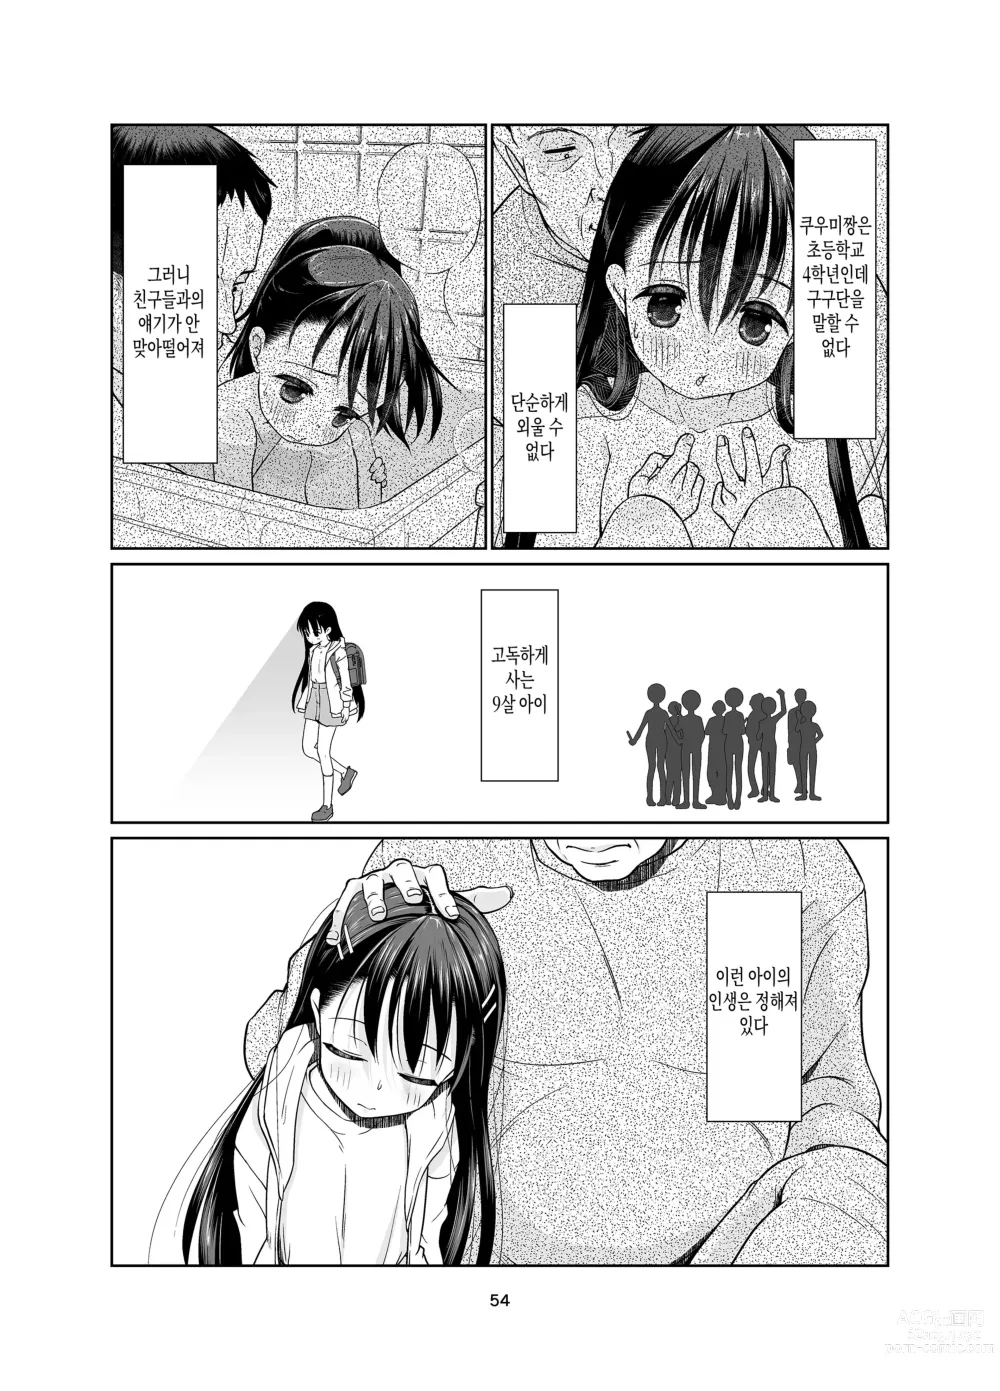 Page 54 of doujinshi Kenryoku Kakusa Lovers Lolicon no Koibito ni Natta 9-saiji